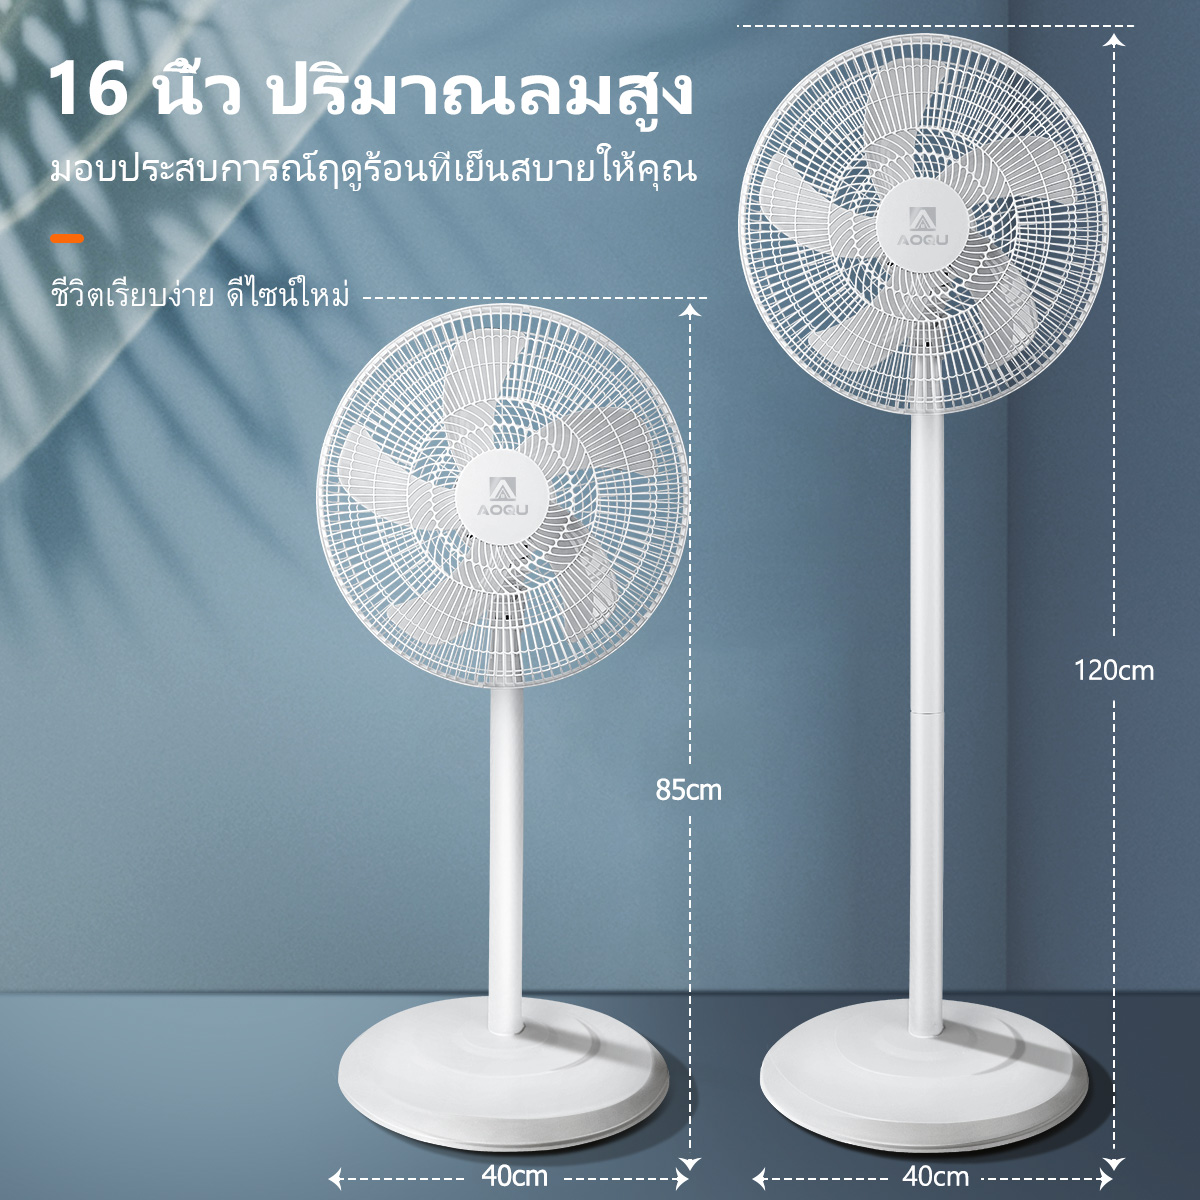 ข้อมูลเกี่ยวกับ Qpio  พัดลม 16 นิ้วถูกๆ พัดลมตั้งพื้น 3ระดับ มีใบพัด5แฉก 16" Stand Fan เสียงเงียบ พัดรมตั้งพื้น พัดลมไฟฟ้ ปรับความสูงได้ ปริมาณลมสูง